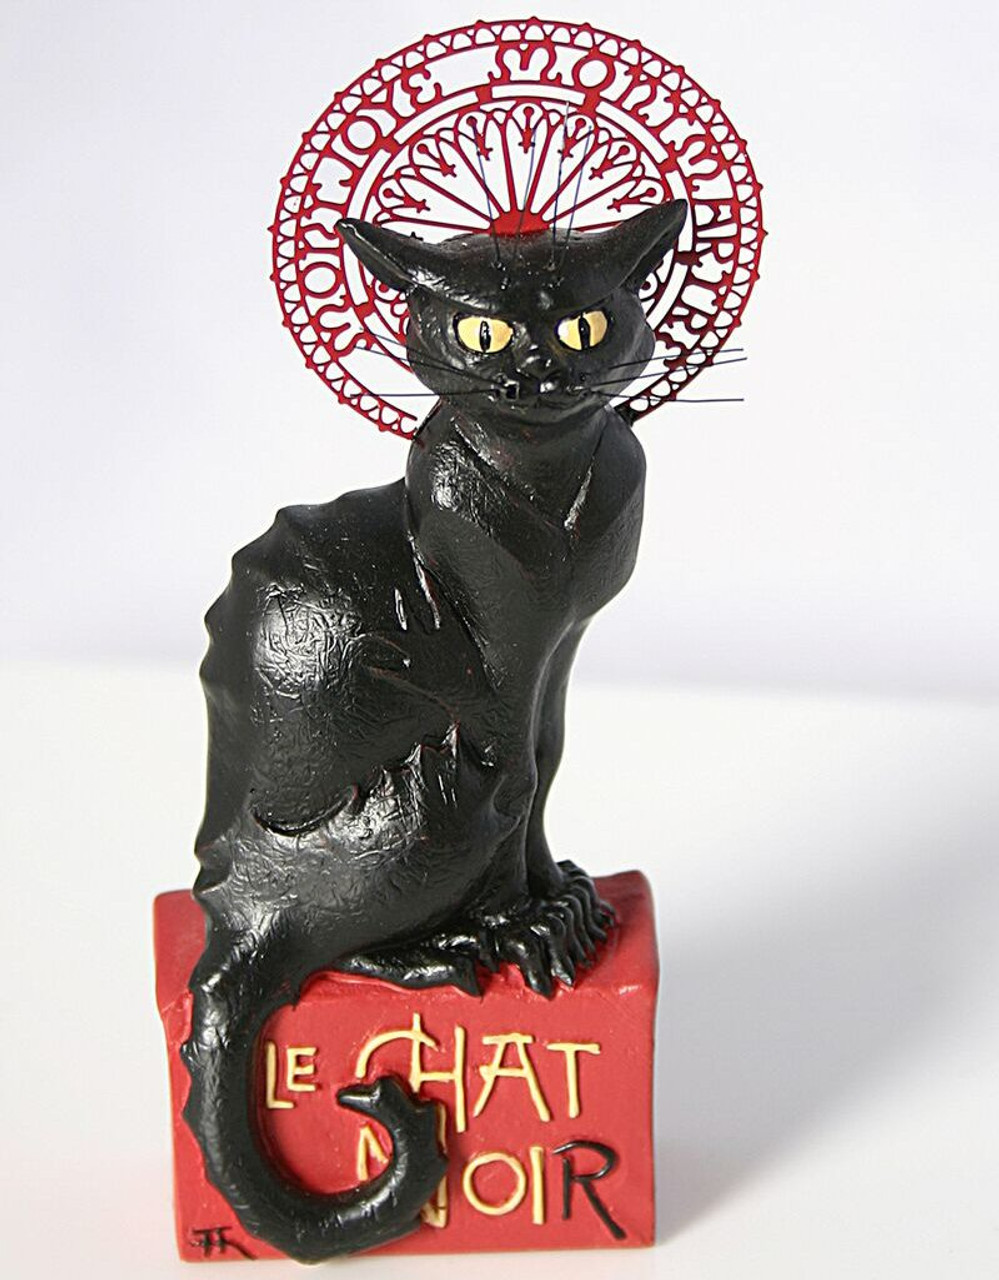 Miniature Le Chat Noir Black Cat Statue By Steinlen Museum Art Reproduction